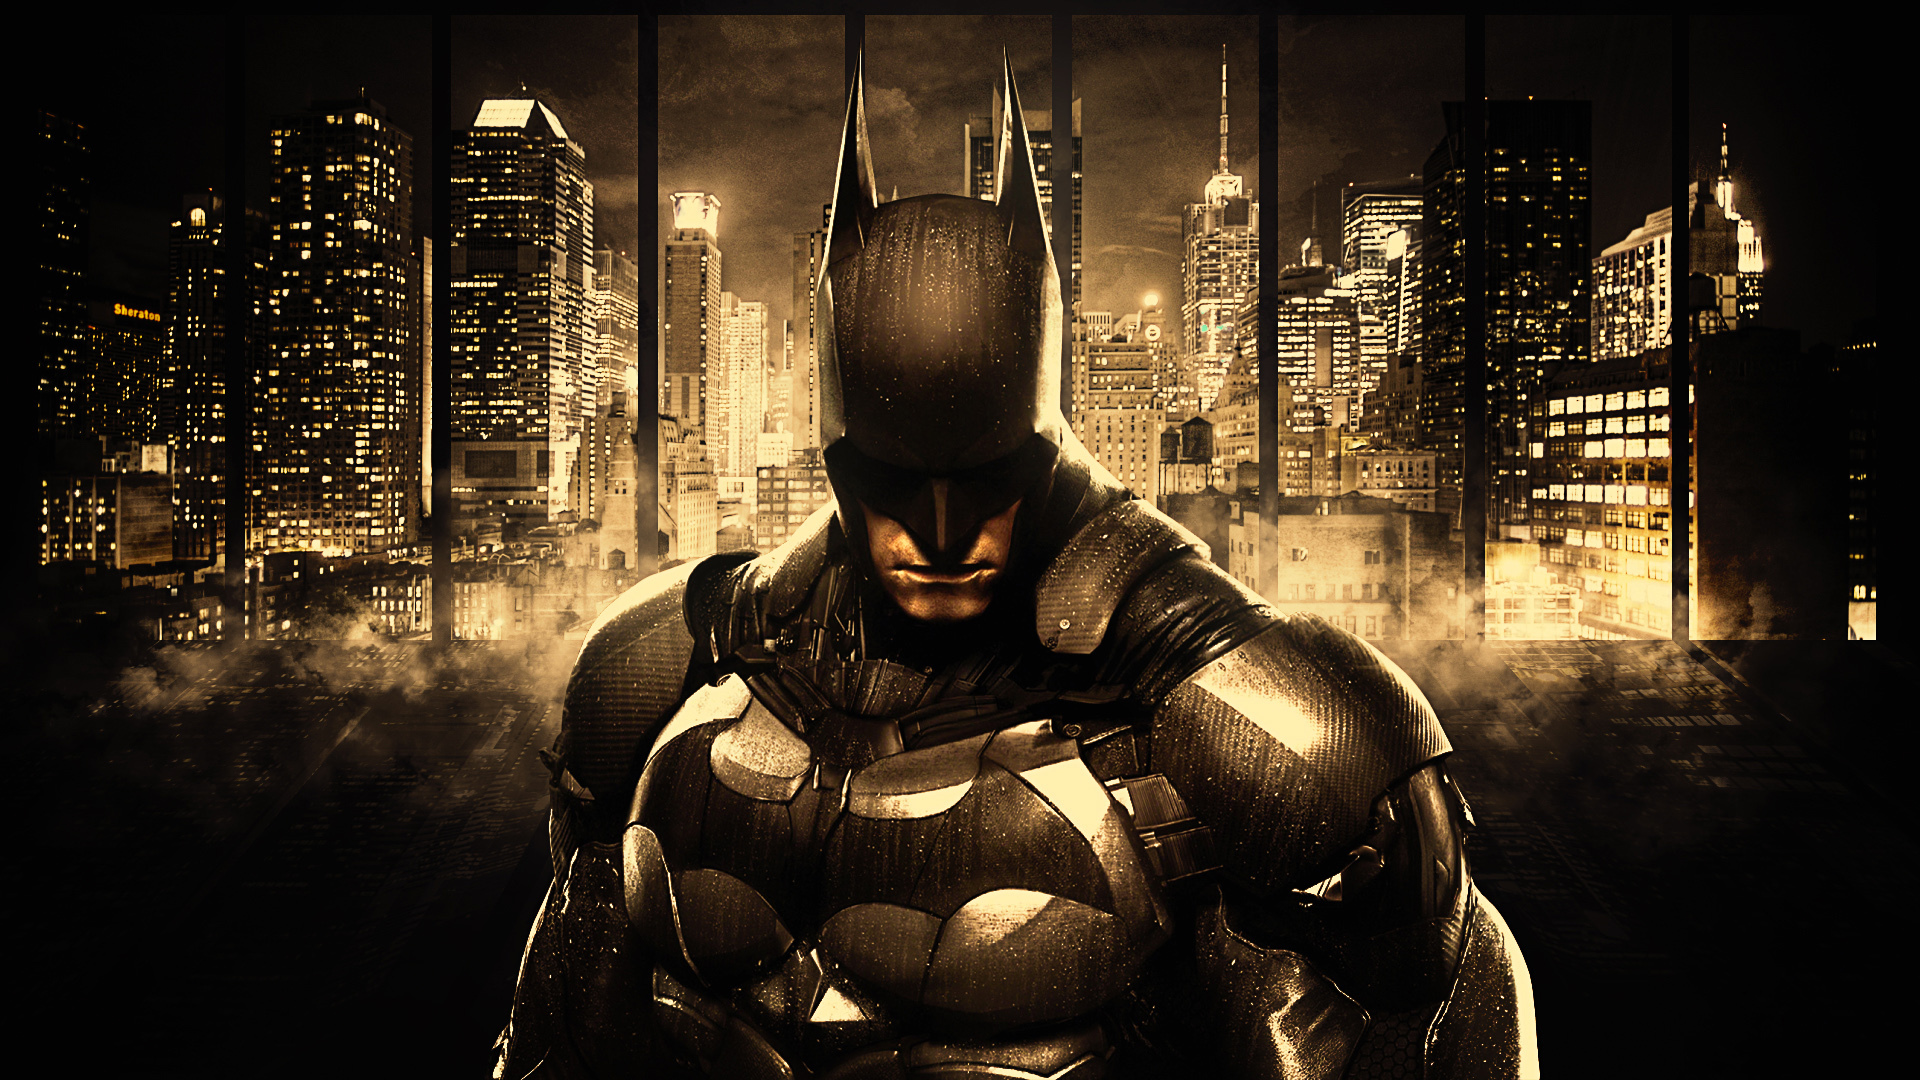 バットマンアーカムナイト壁紙,バットマン,アクションアドベンチャーゲーム,スーパーヒーロー,架空の人物,正義リーグ